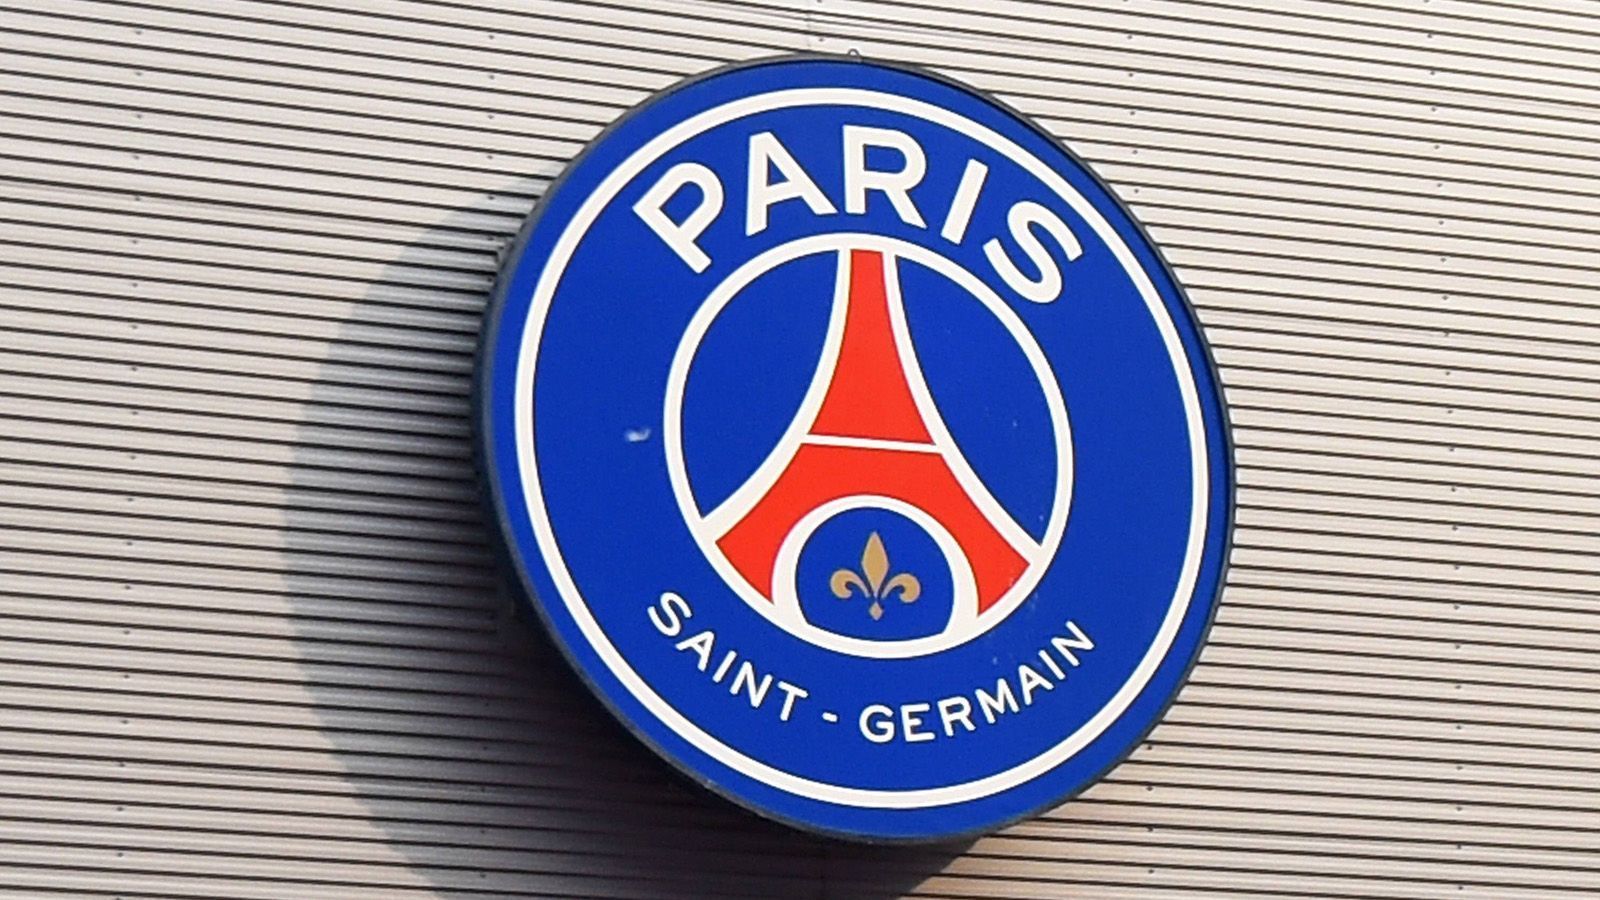 
                <strong>Platz 7: Paris Saint-Germain</strong><br>
                Markenwert: 967 Millionen Euro
              